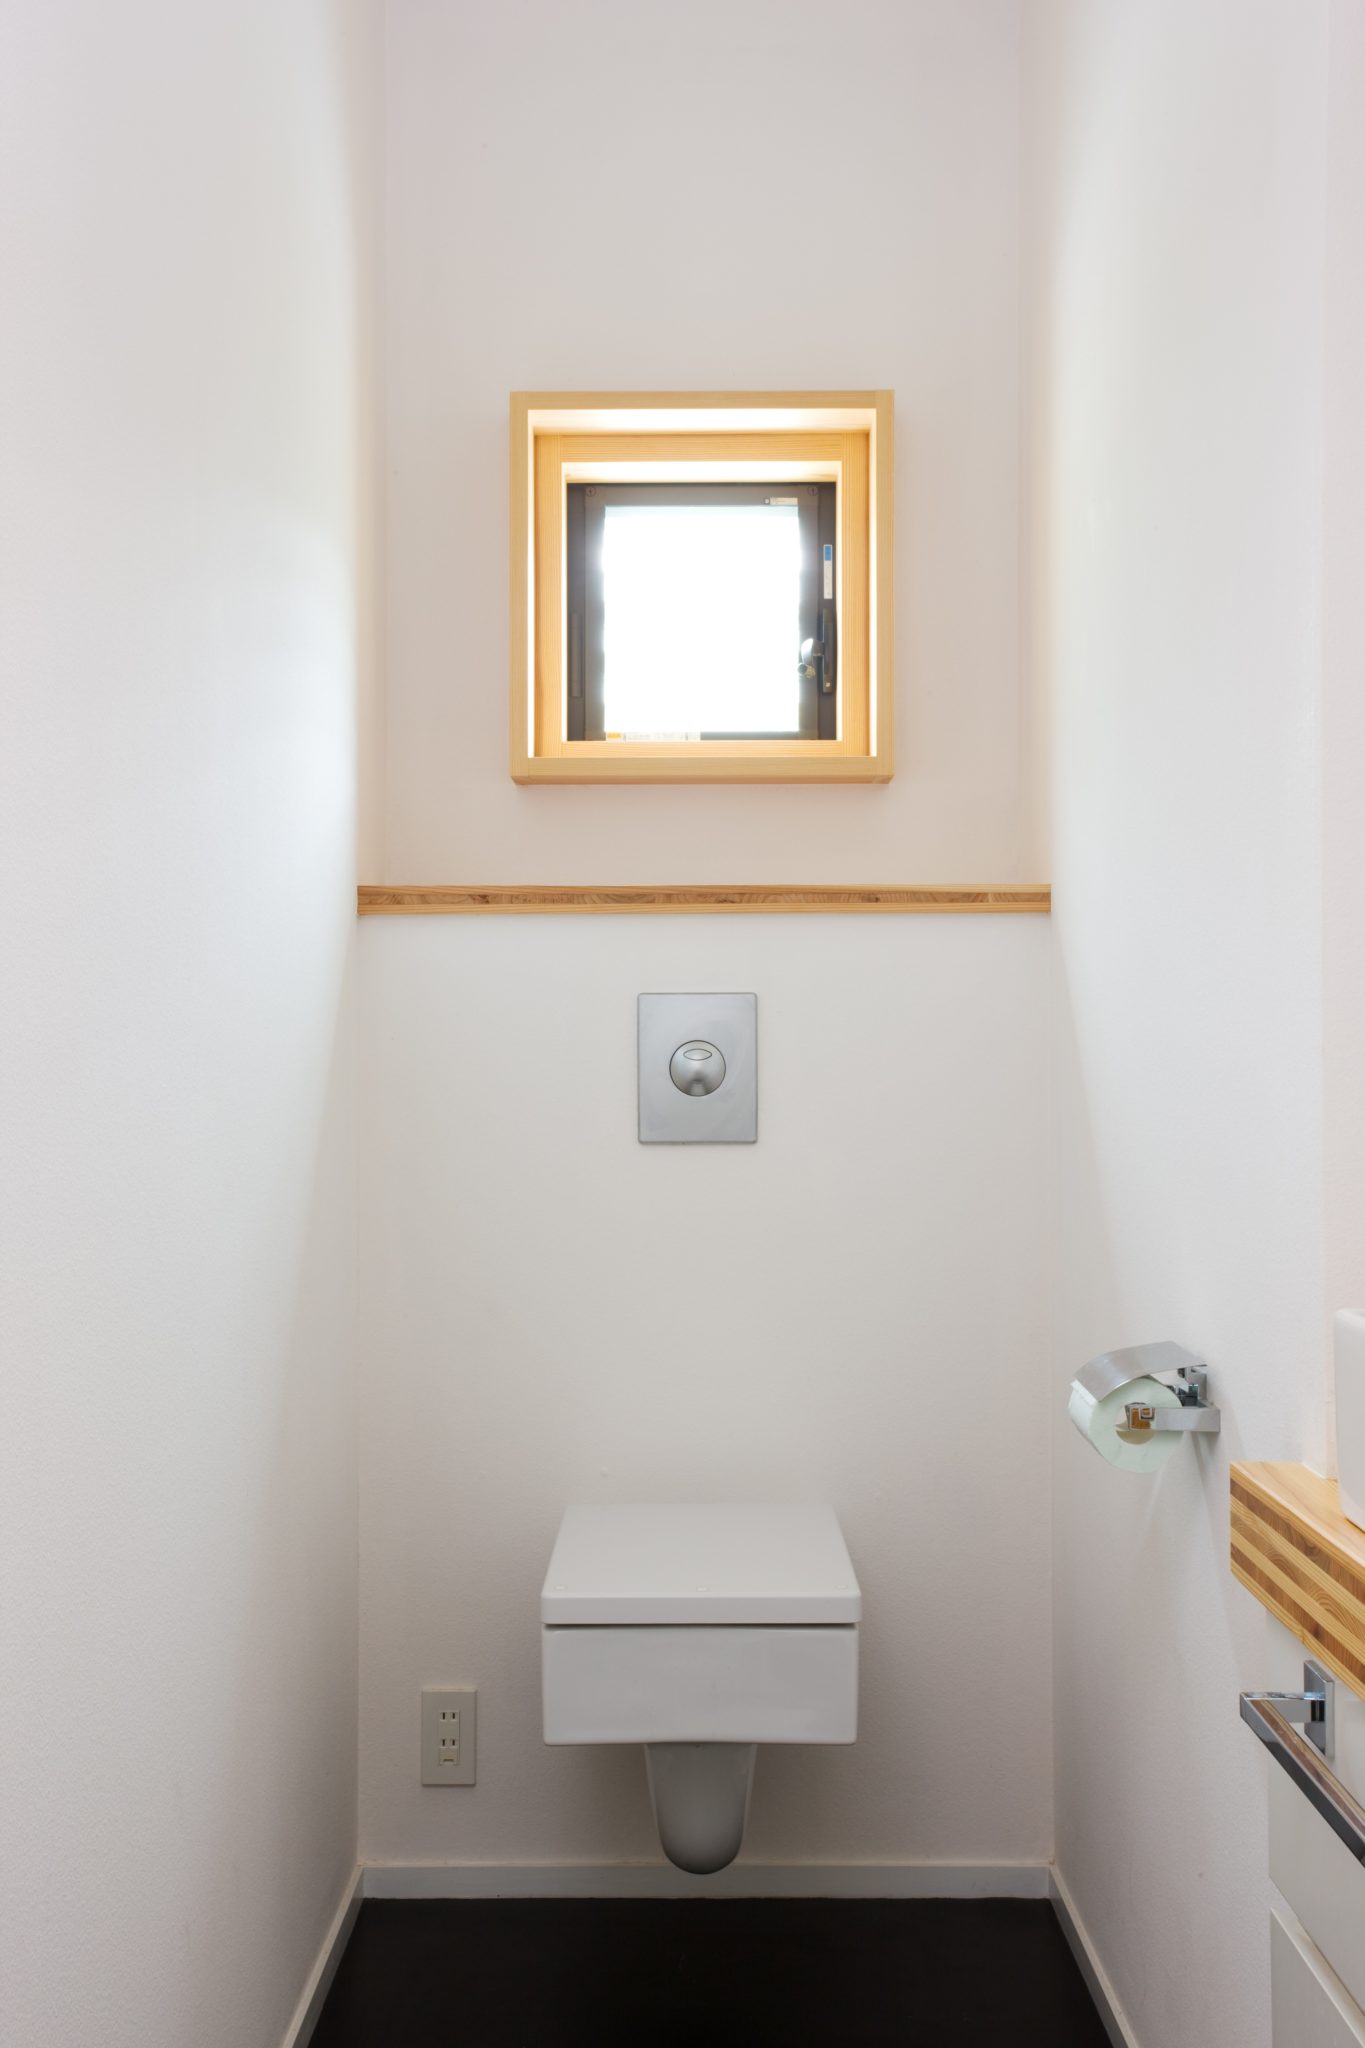 トイレ
オランダ人クライアントは丸が嫌い
「丸でもいいよ、それが四角い限りはね・・・」